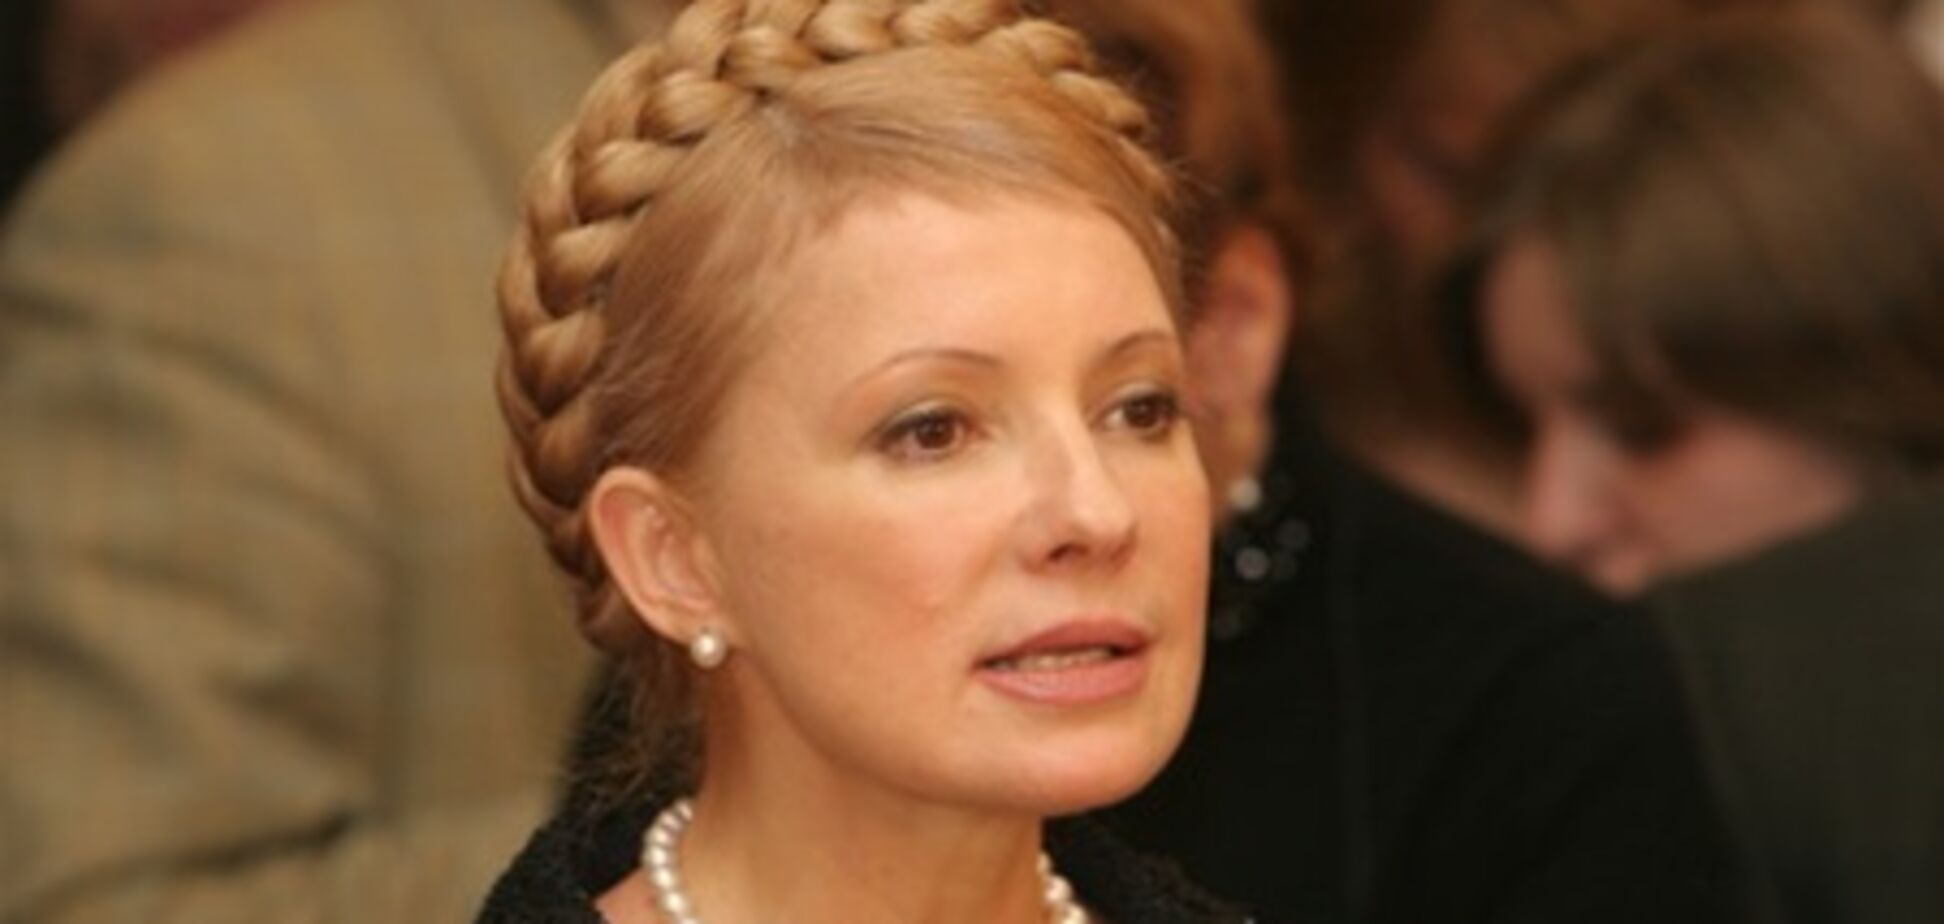 ПР: Тимошенко зв'язана по руках і ногах